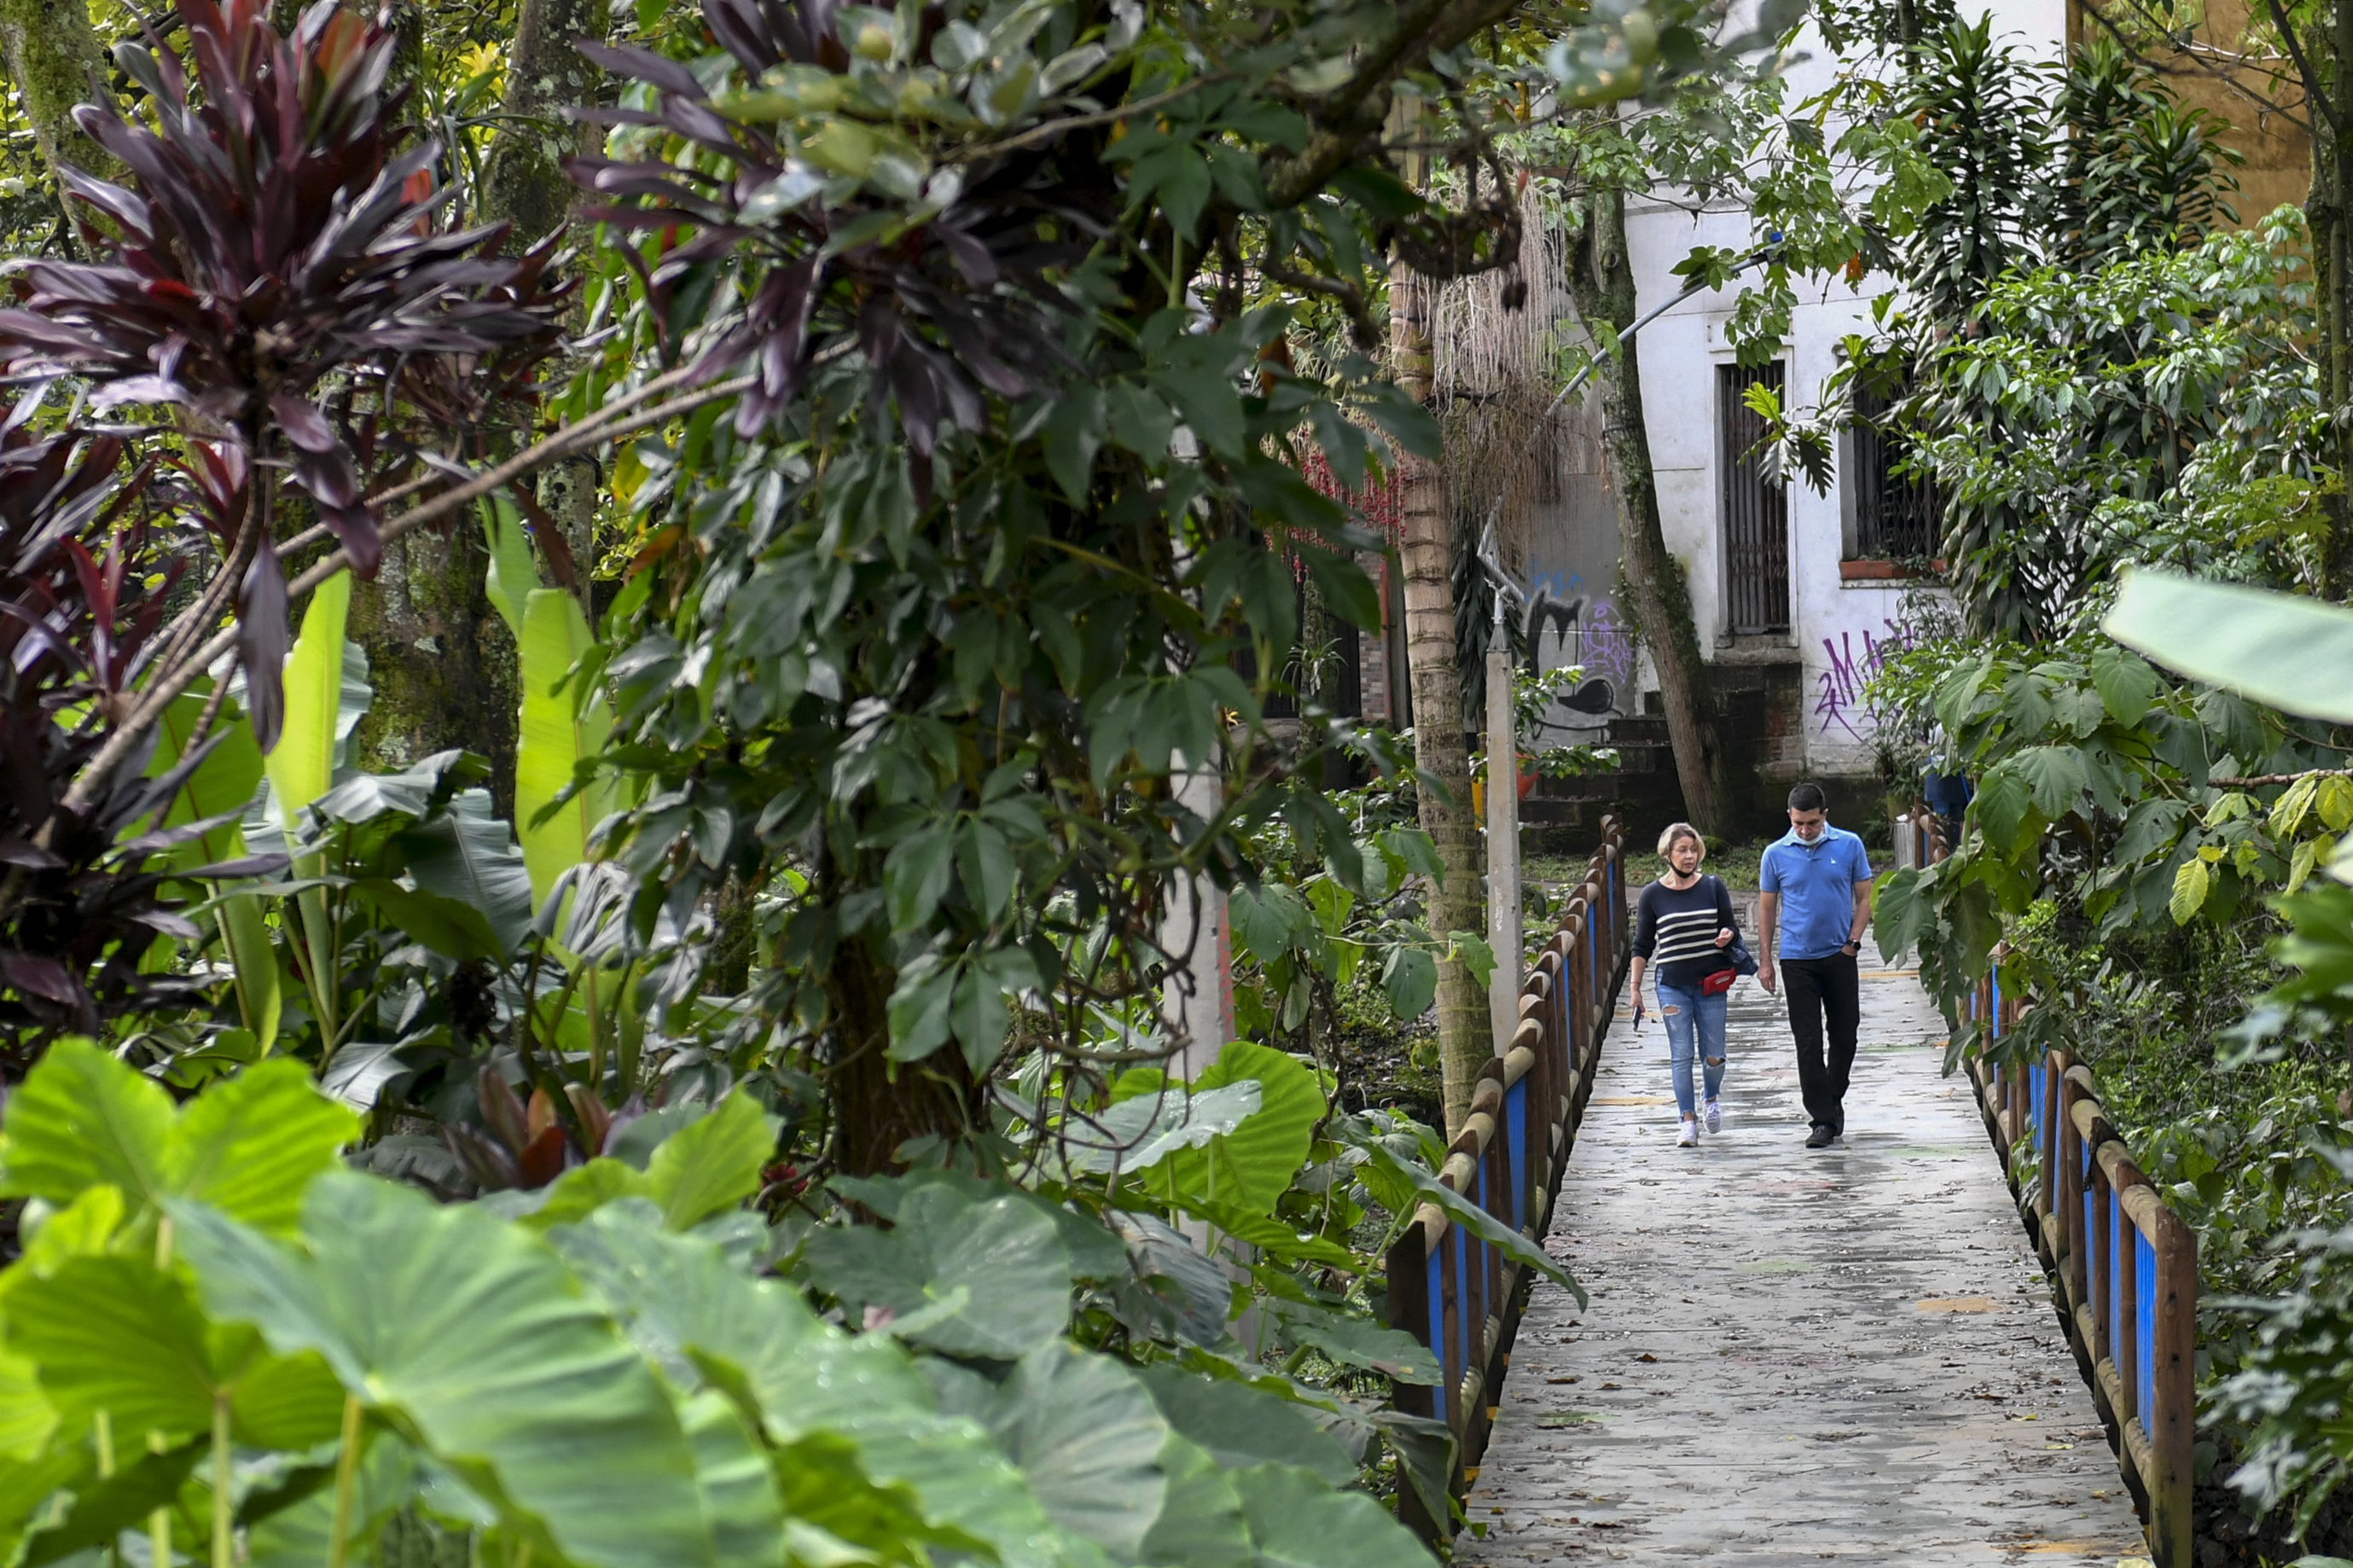 Így lett Medellín a kokain és az erőszak központjából az egész világnak példát mutató zöld okosváros